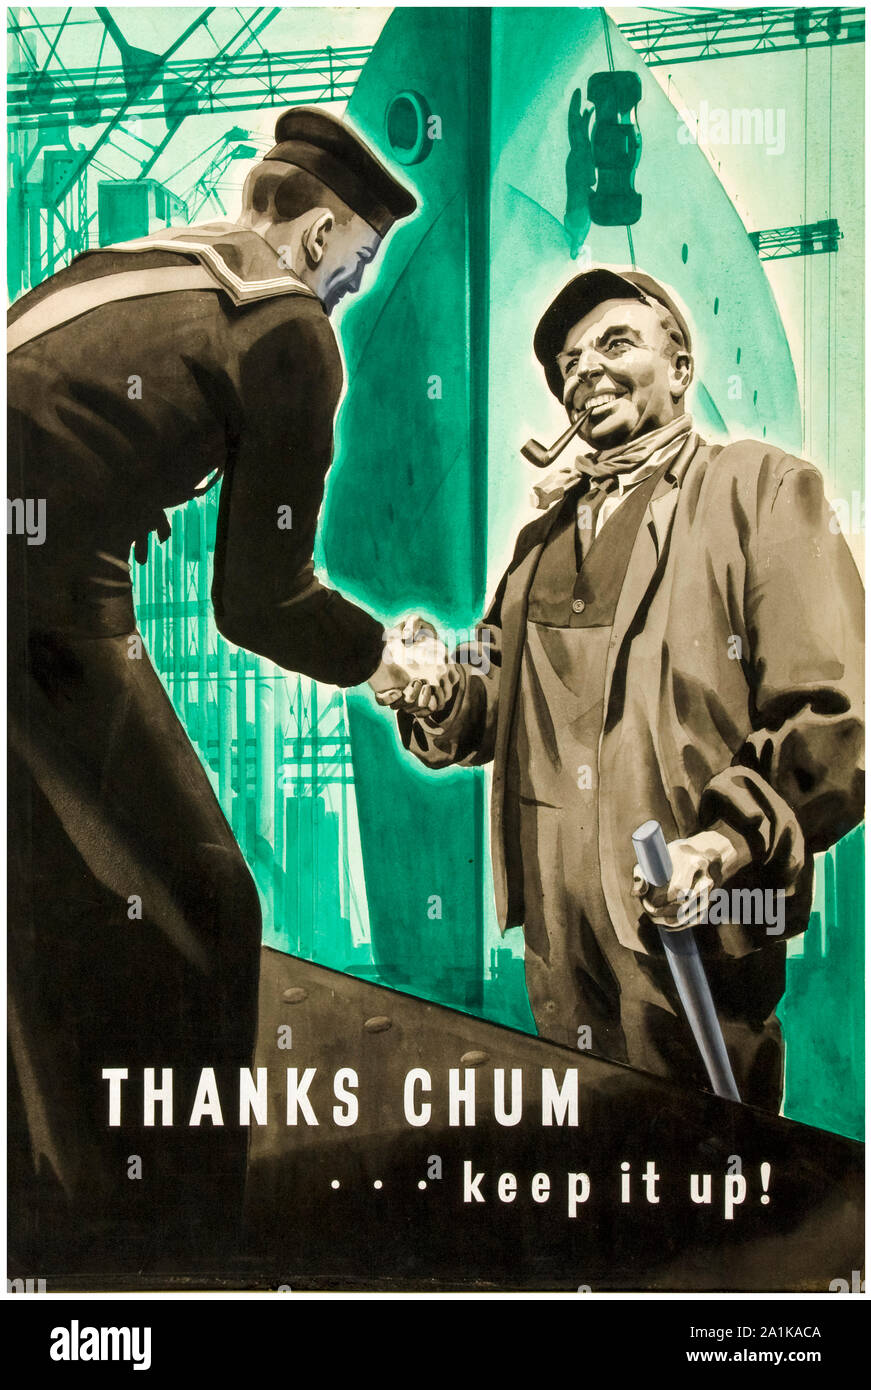 British, WW2, dell'industria delle costruzioni navali, grazie Chum keep it up!, poster motivazionale, 1939-1946 Foto Stock